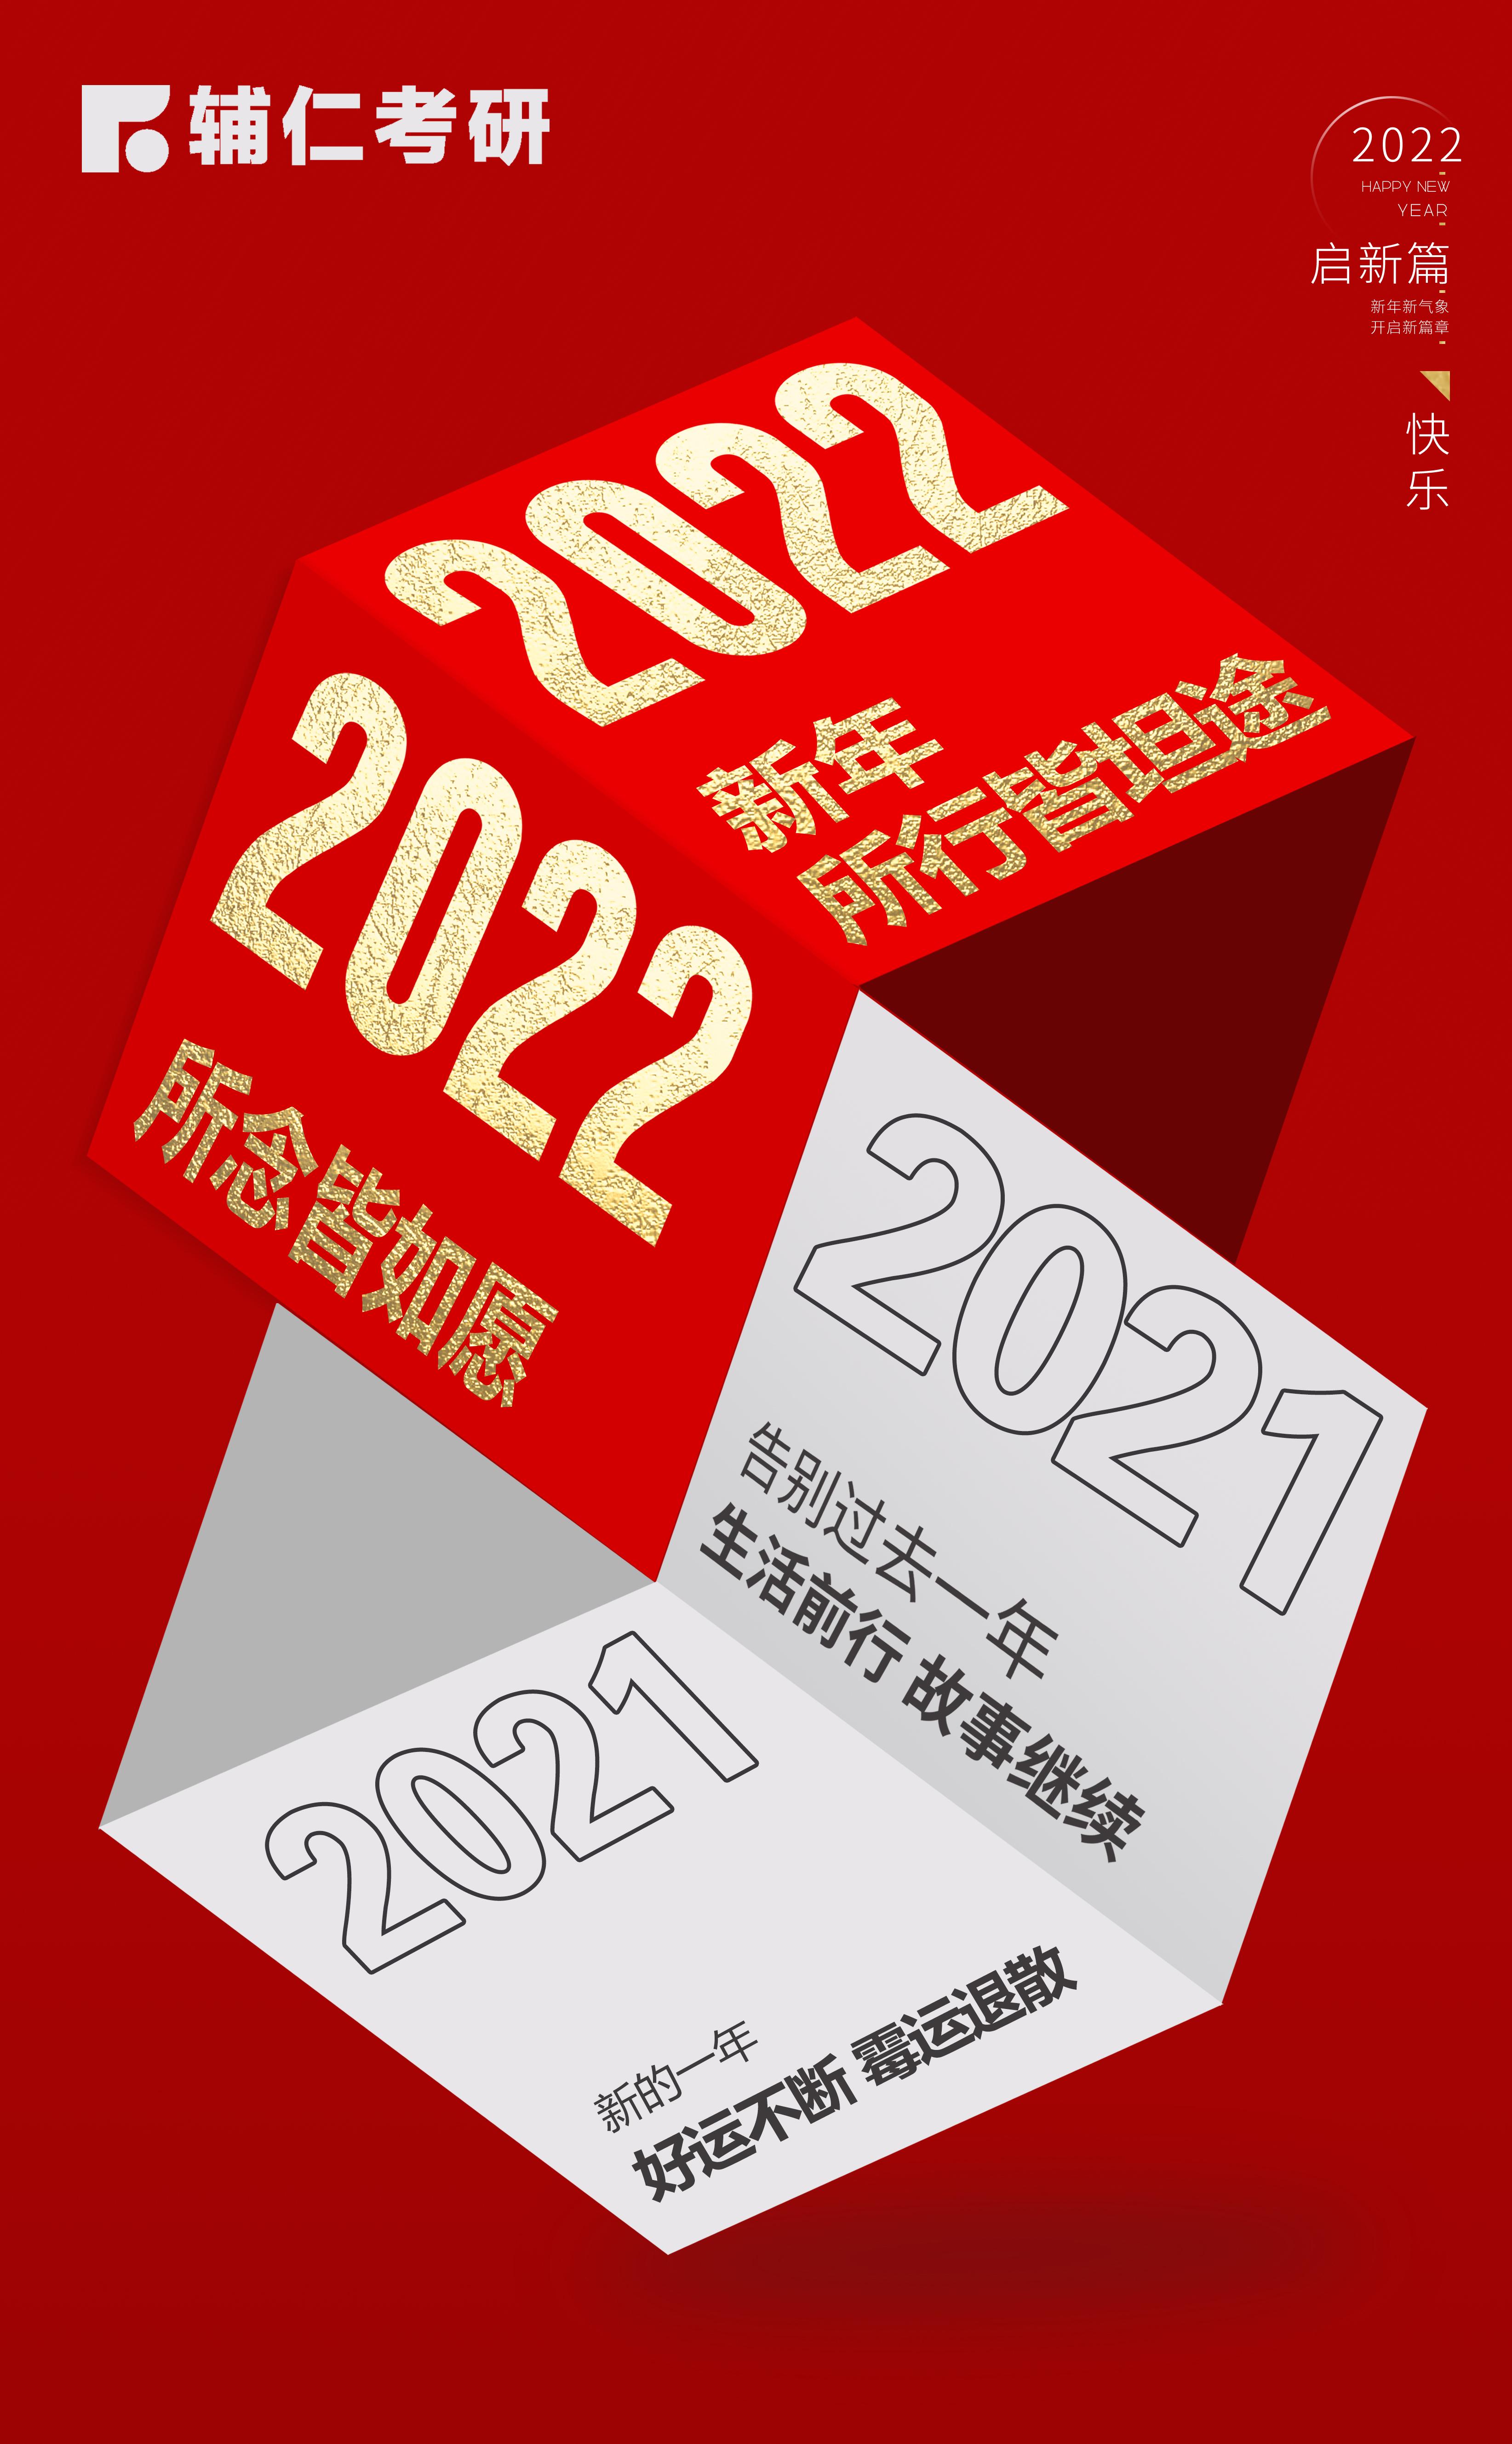 再见2021,2022你好!